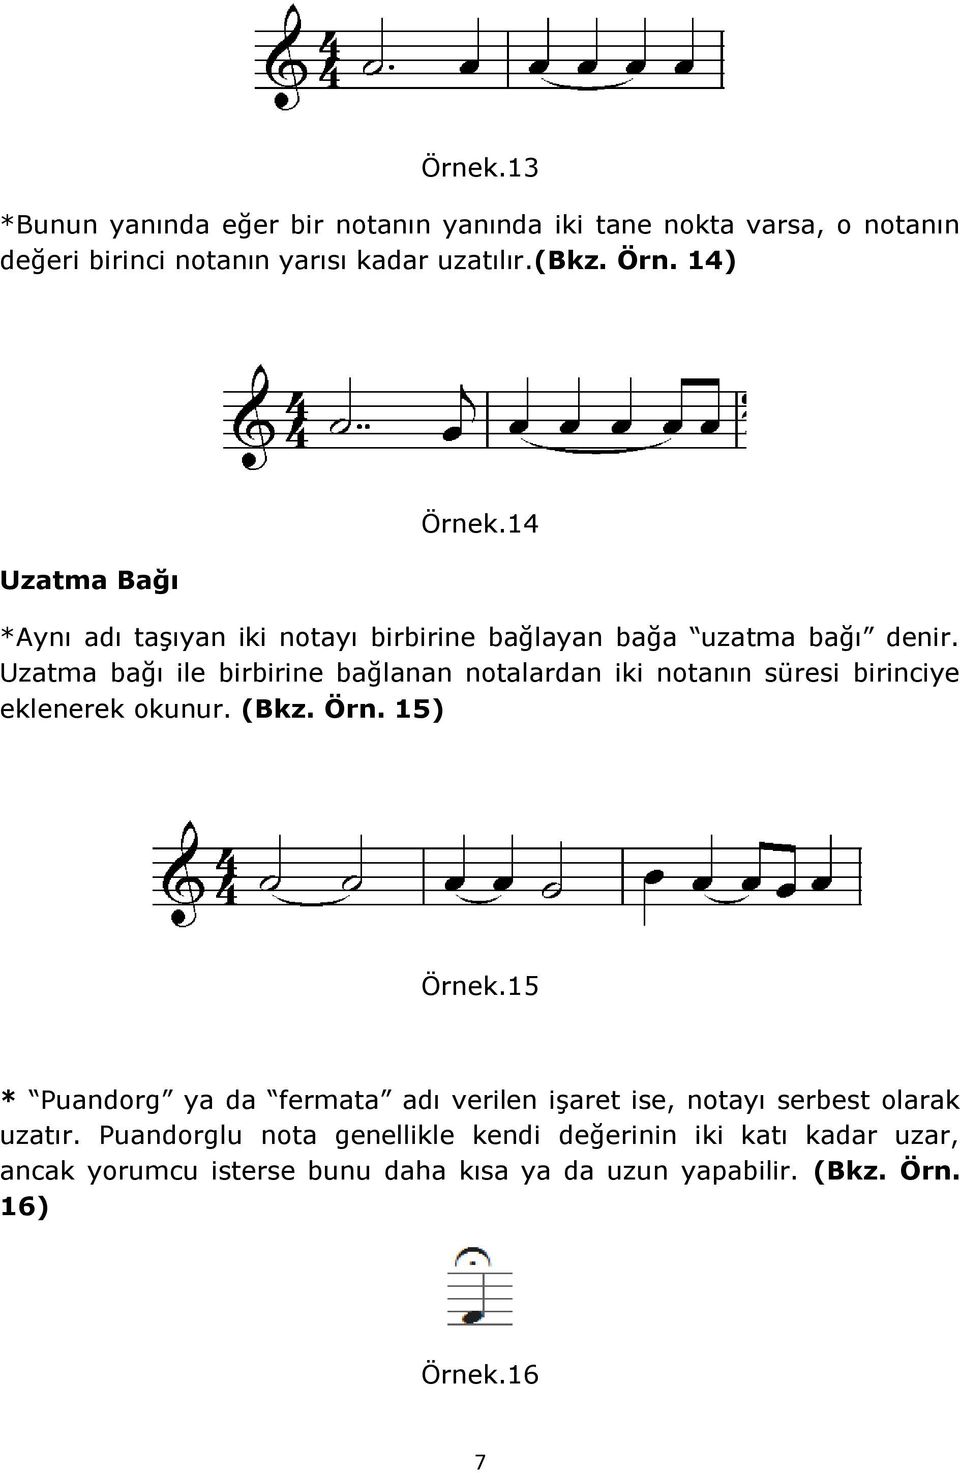 Uzatma bağı ile birbirine bağlanan notalardan iki notanın süresi birinciye eklenerek okunur. (Bkz. Örn. 15) Örnek.